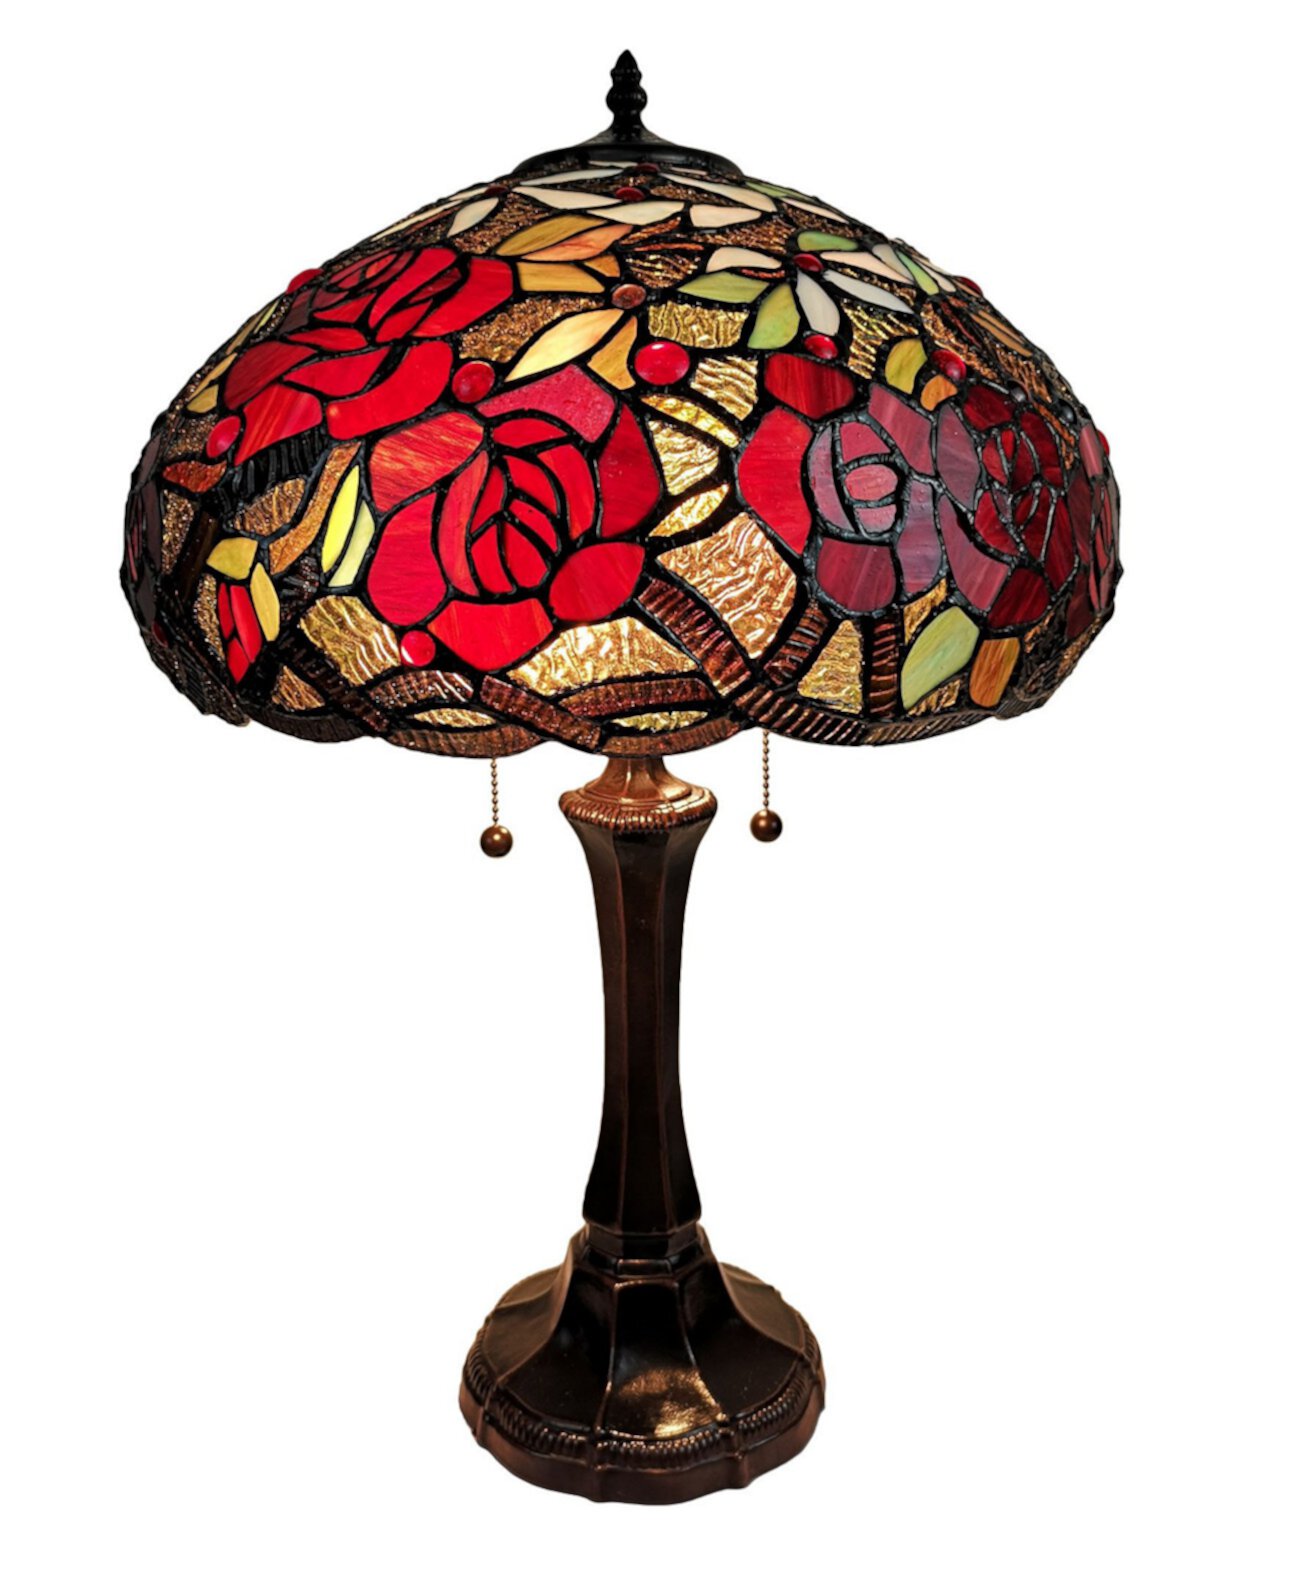 Настольная лампа Tiffany Style Roses Amora Lighting